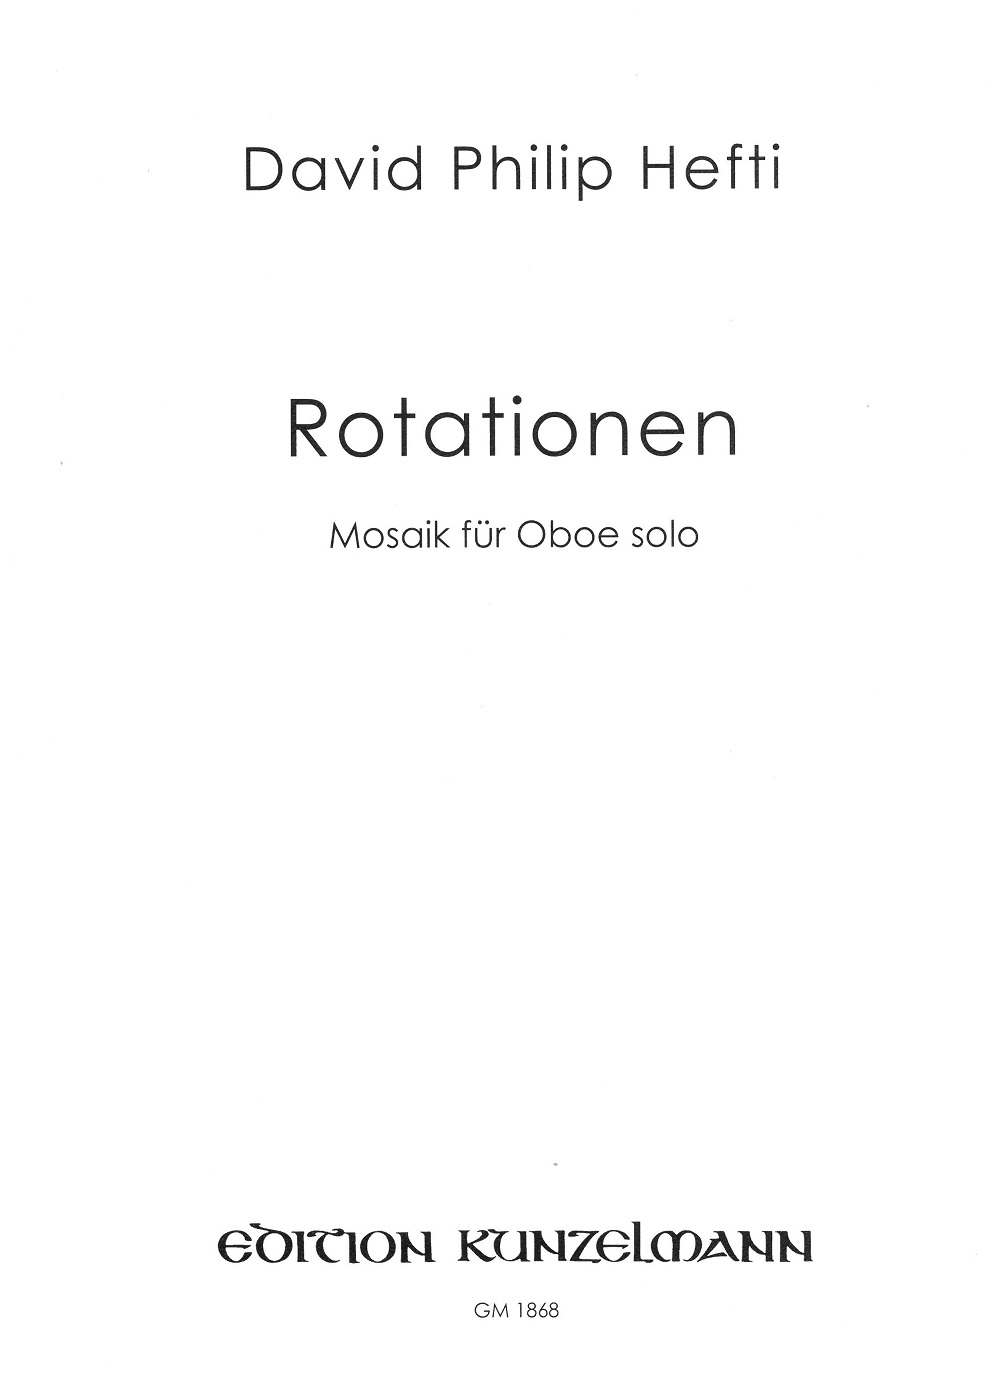 D.Ph. Hefti(*1975): Rotationen (2009)<br>Mosaik für Oboe solo